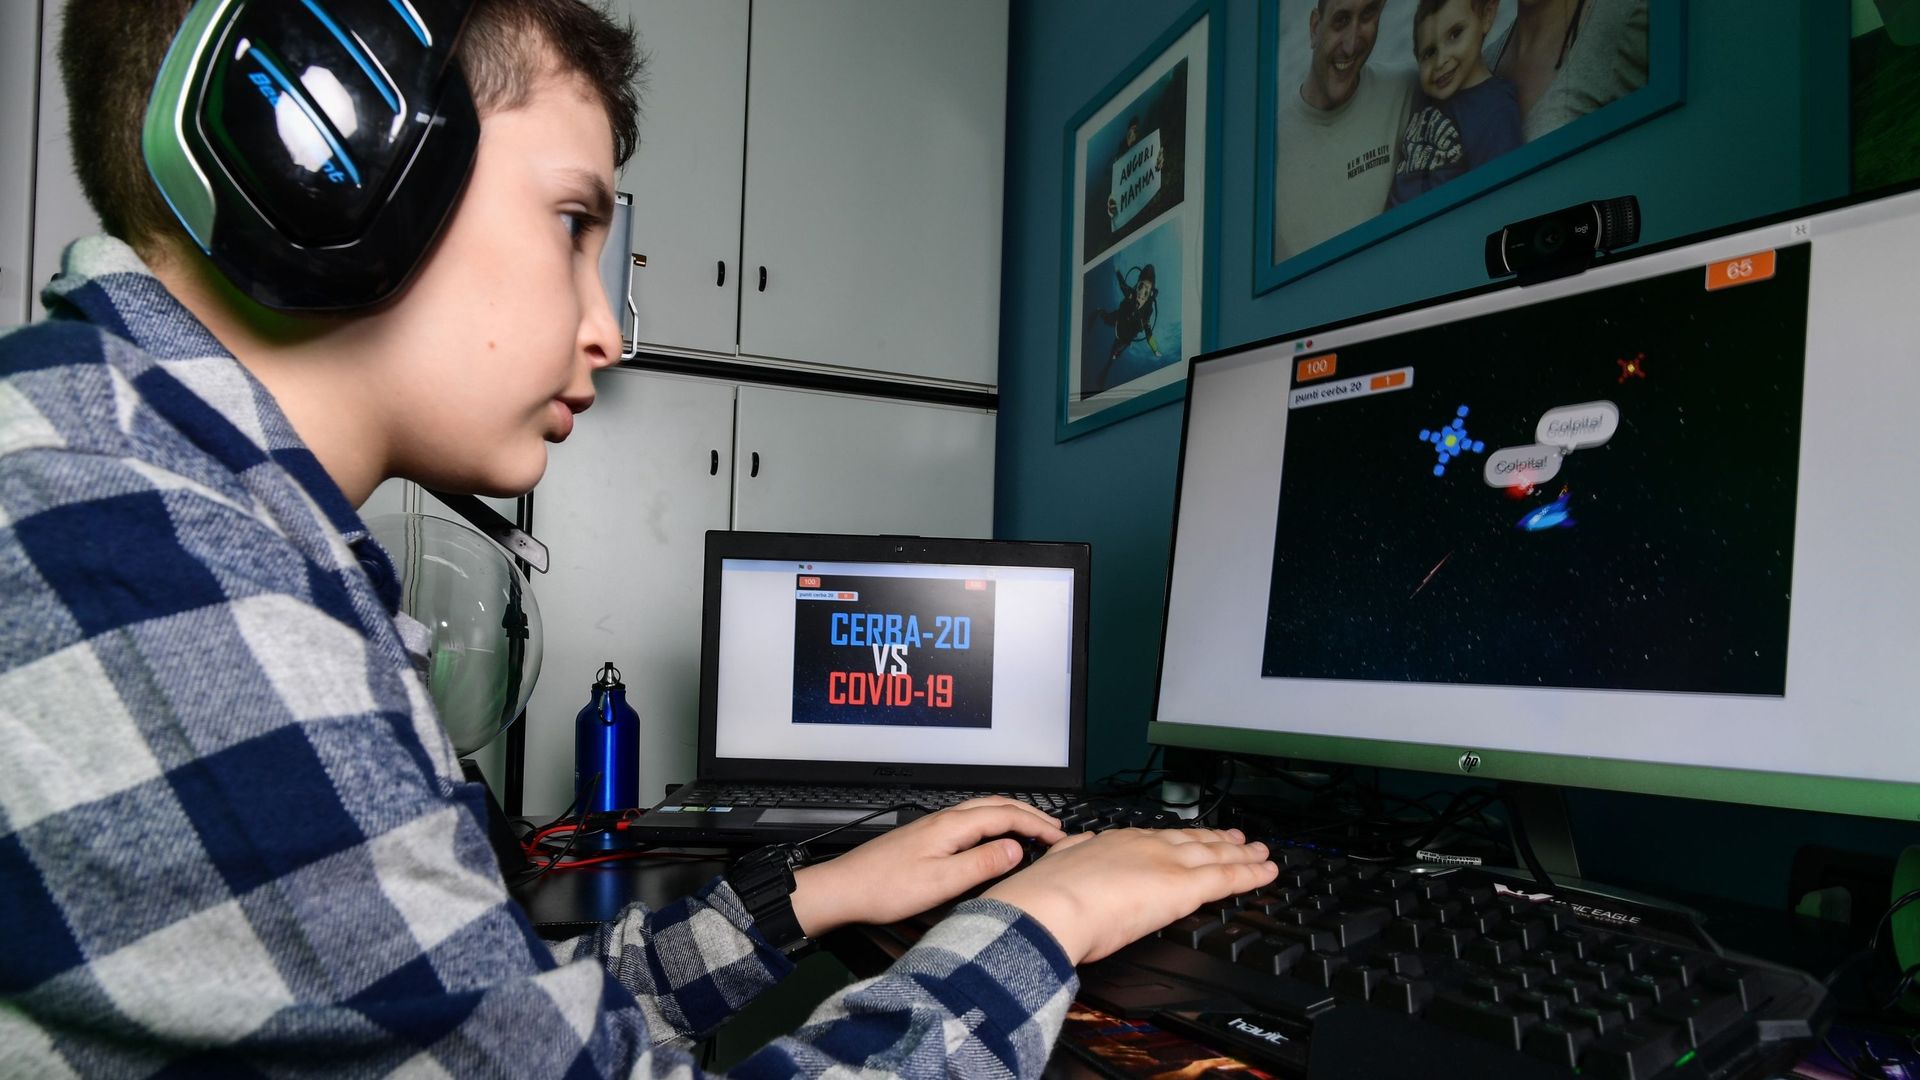 Confiné, un garçon de 9 ans crée un jeu vidéo sur le coronavirus